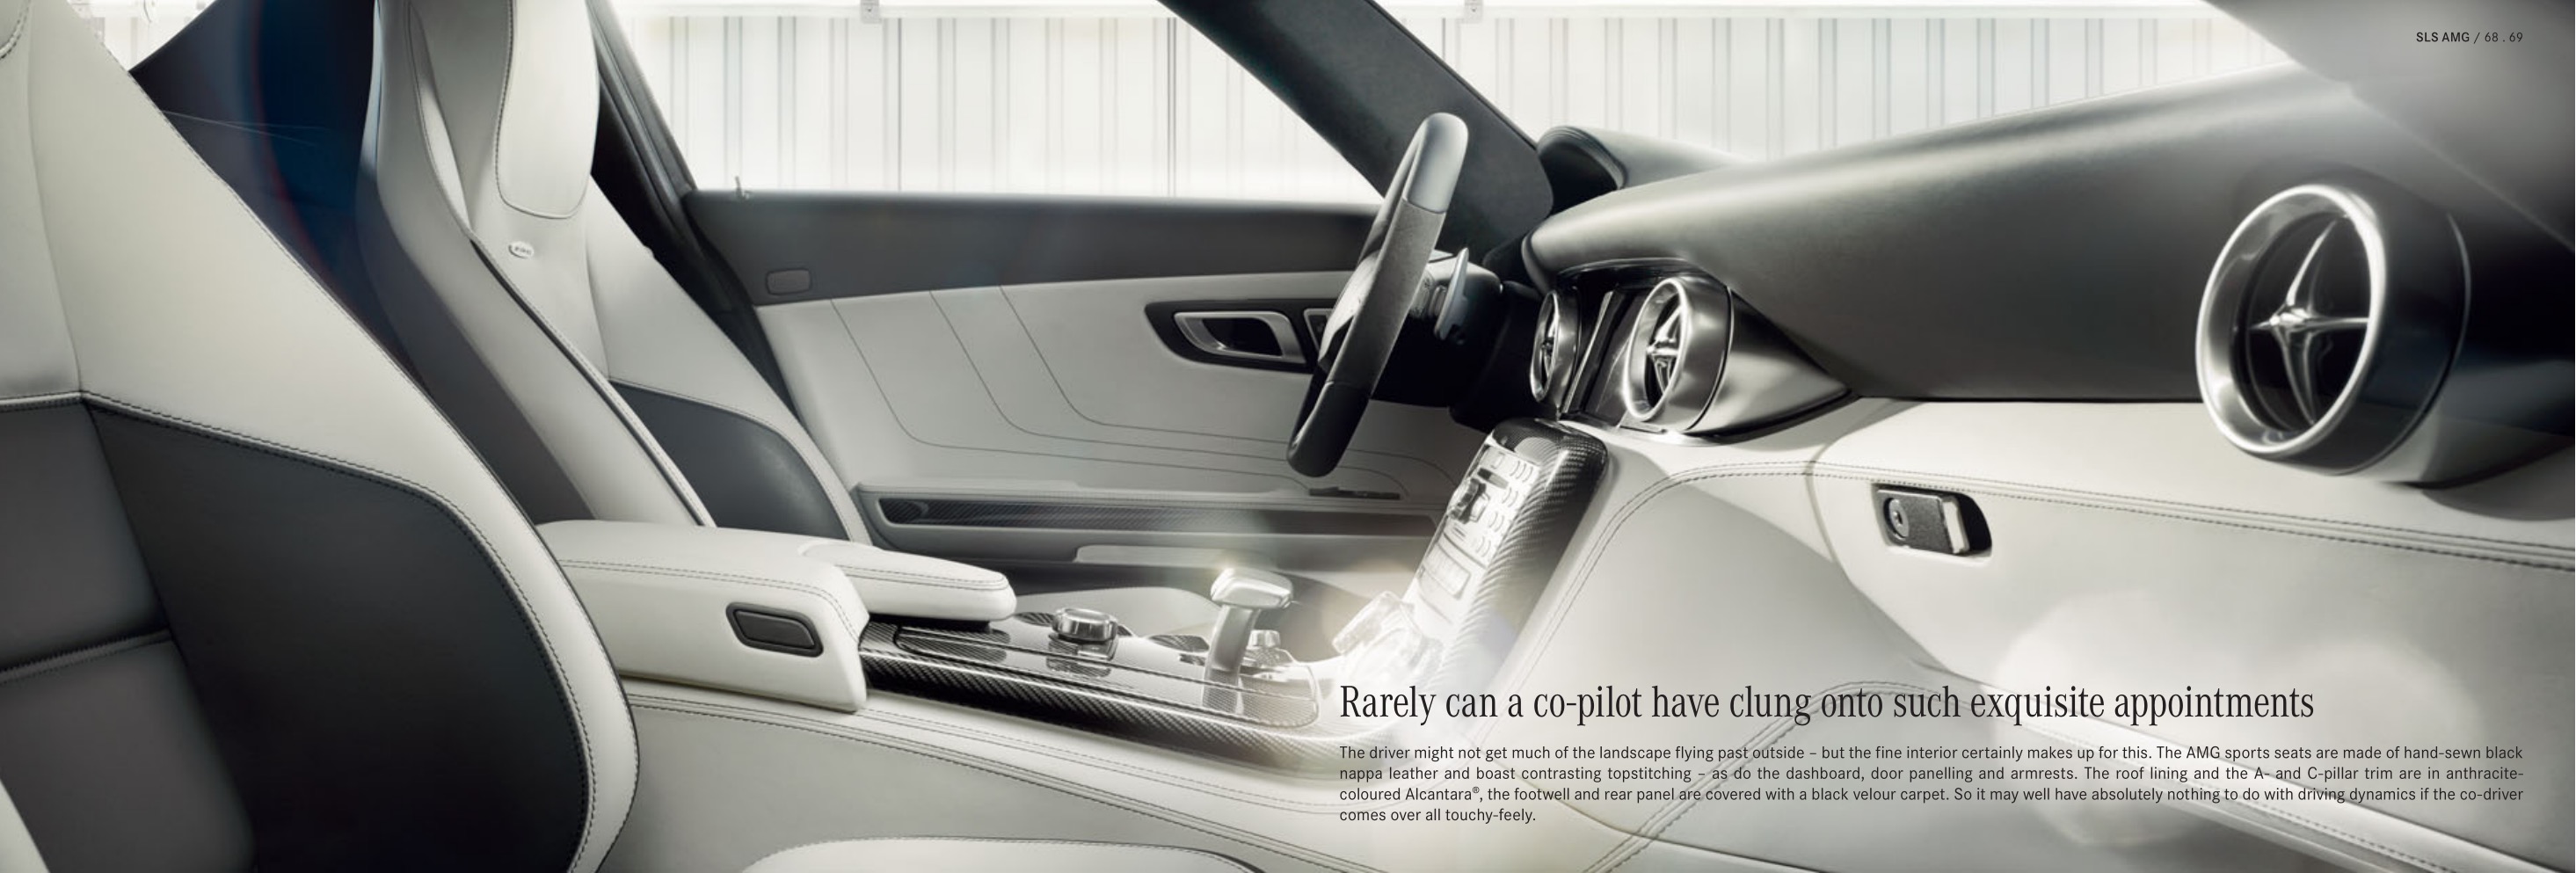 2013 Mercedes-Benz SLS Class Brochure Page 17